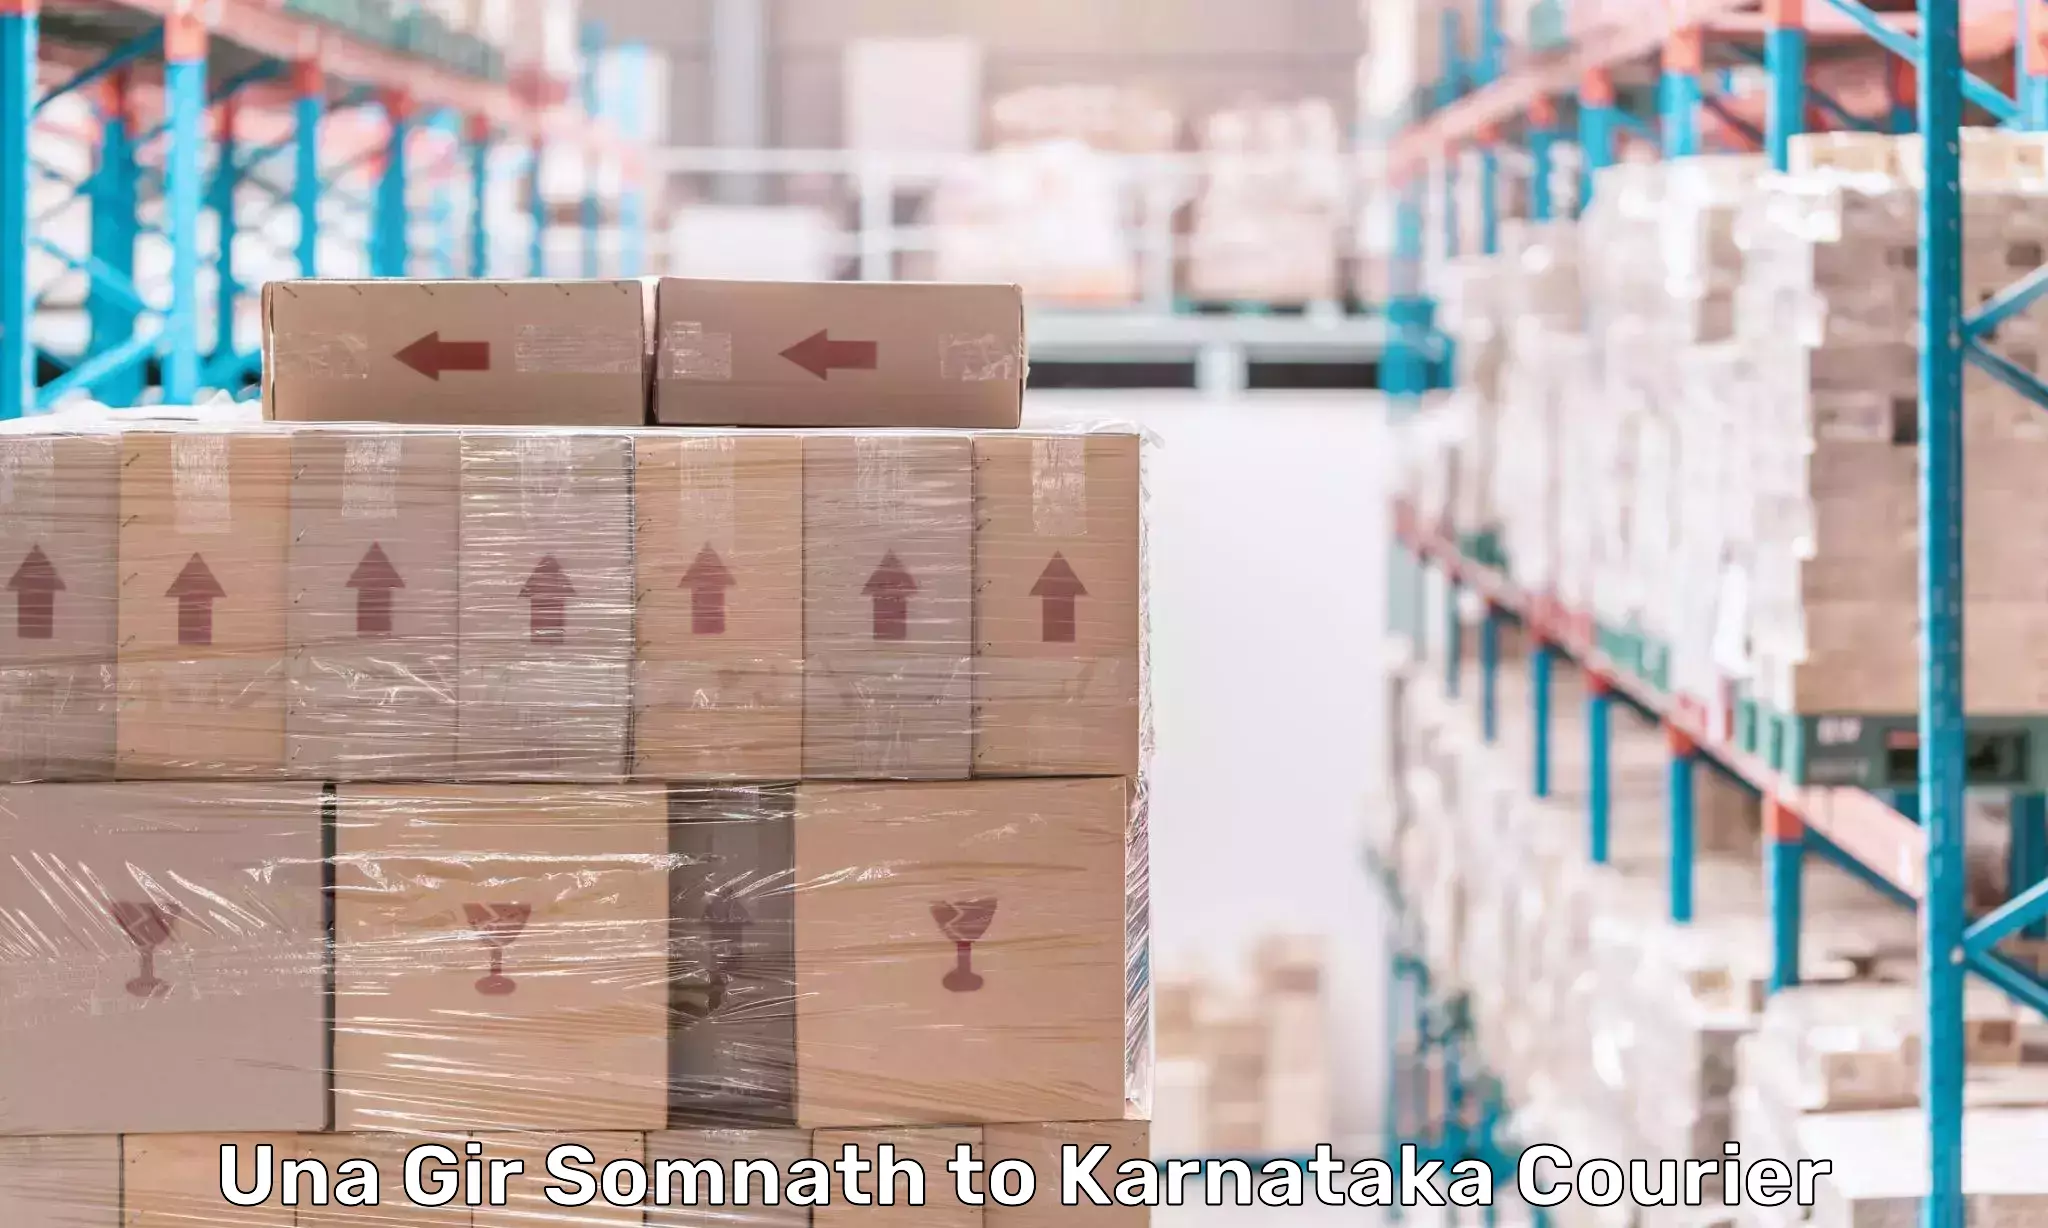 Efficient cargo services Una Gir Somnath to Karnataka